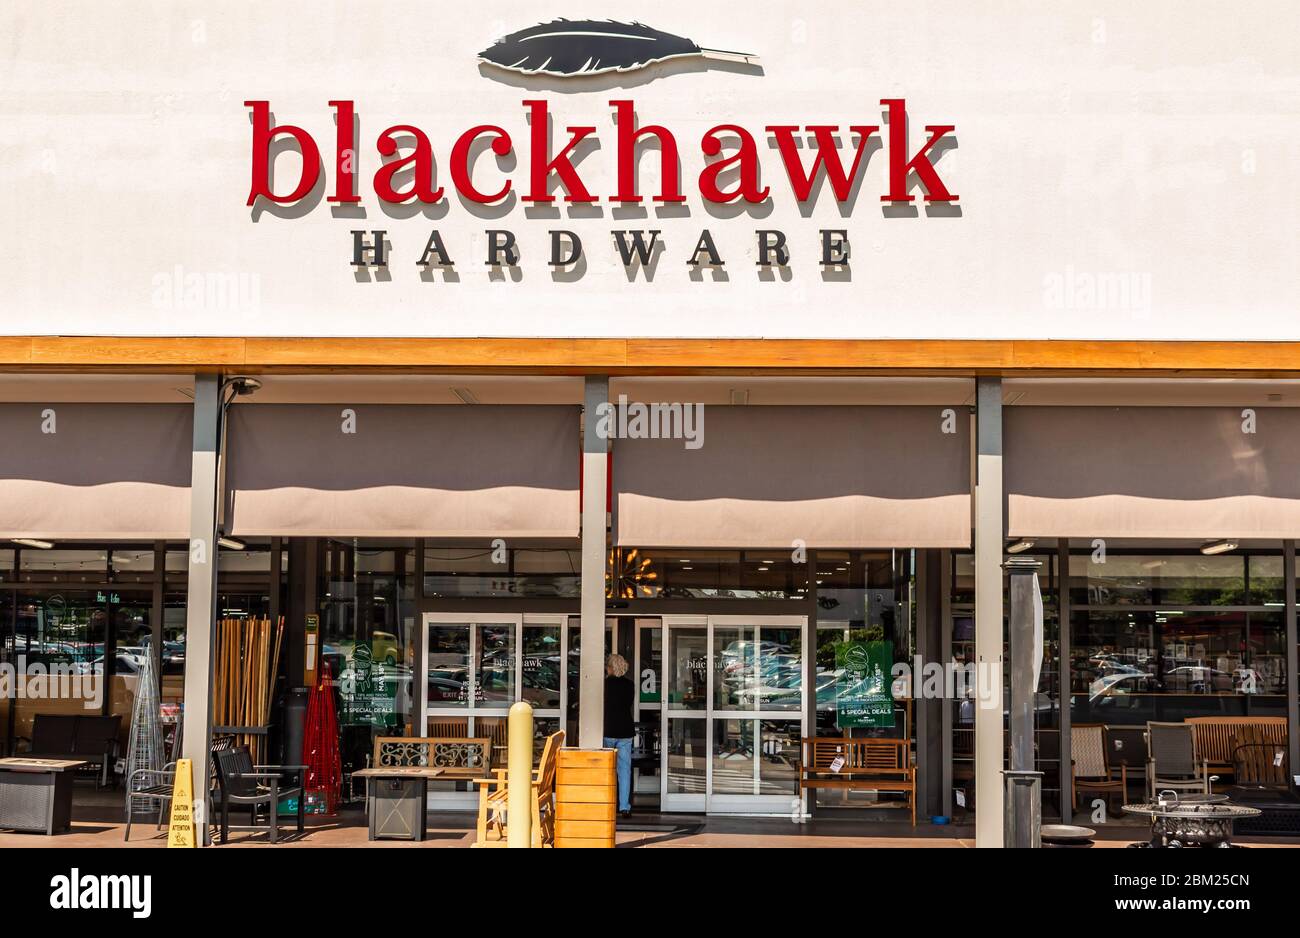 Charlotte, NC/USA - 8. Mai 2019: Mittlere horizontale Aufnahme der Marke/des Logos von 'Blackhawk Hardware', die an der Fassade dieses beliebten Einzelhandelswarenladens angebracht ist. Stockfoto